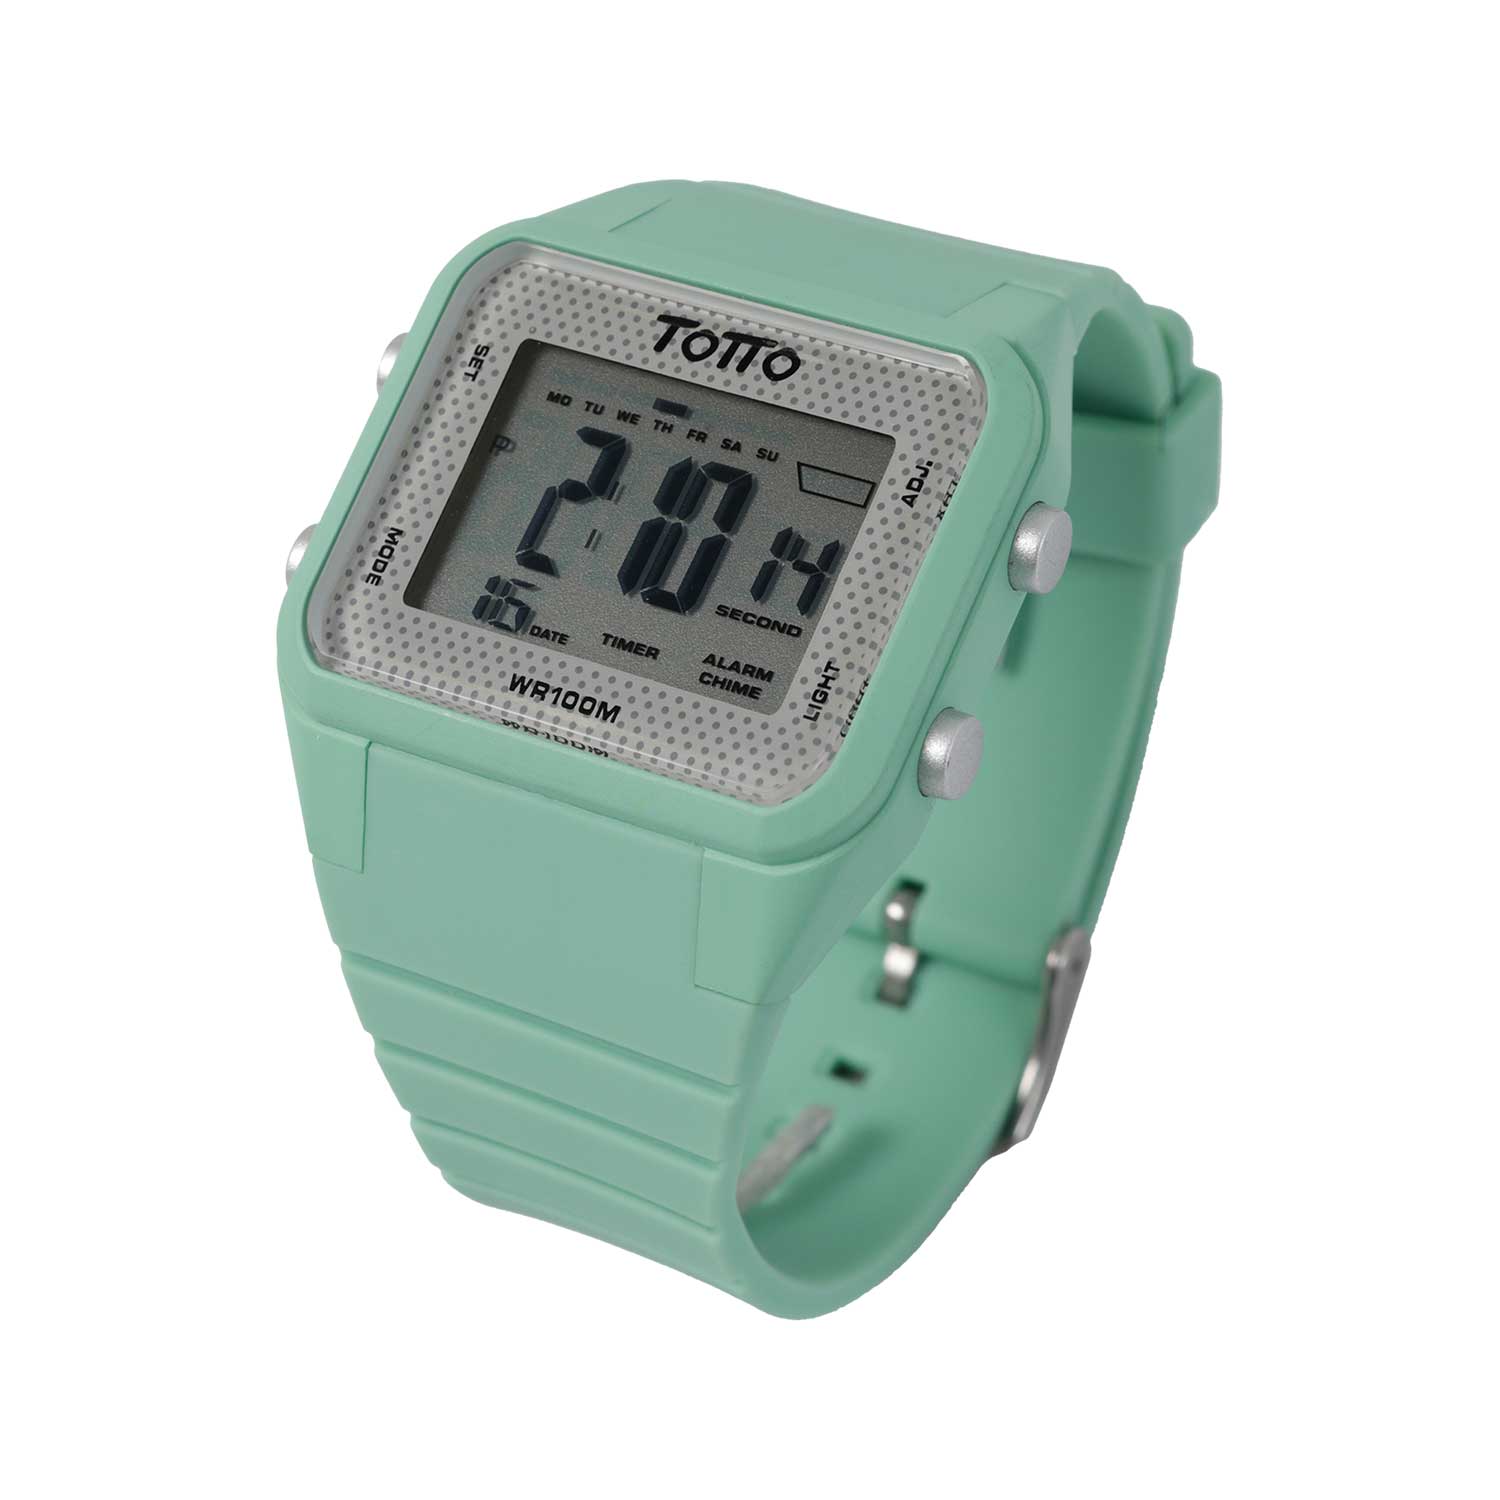 TOTTO Corporativo - Reloj Digital 10 Atm Monza